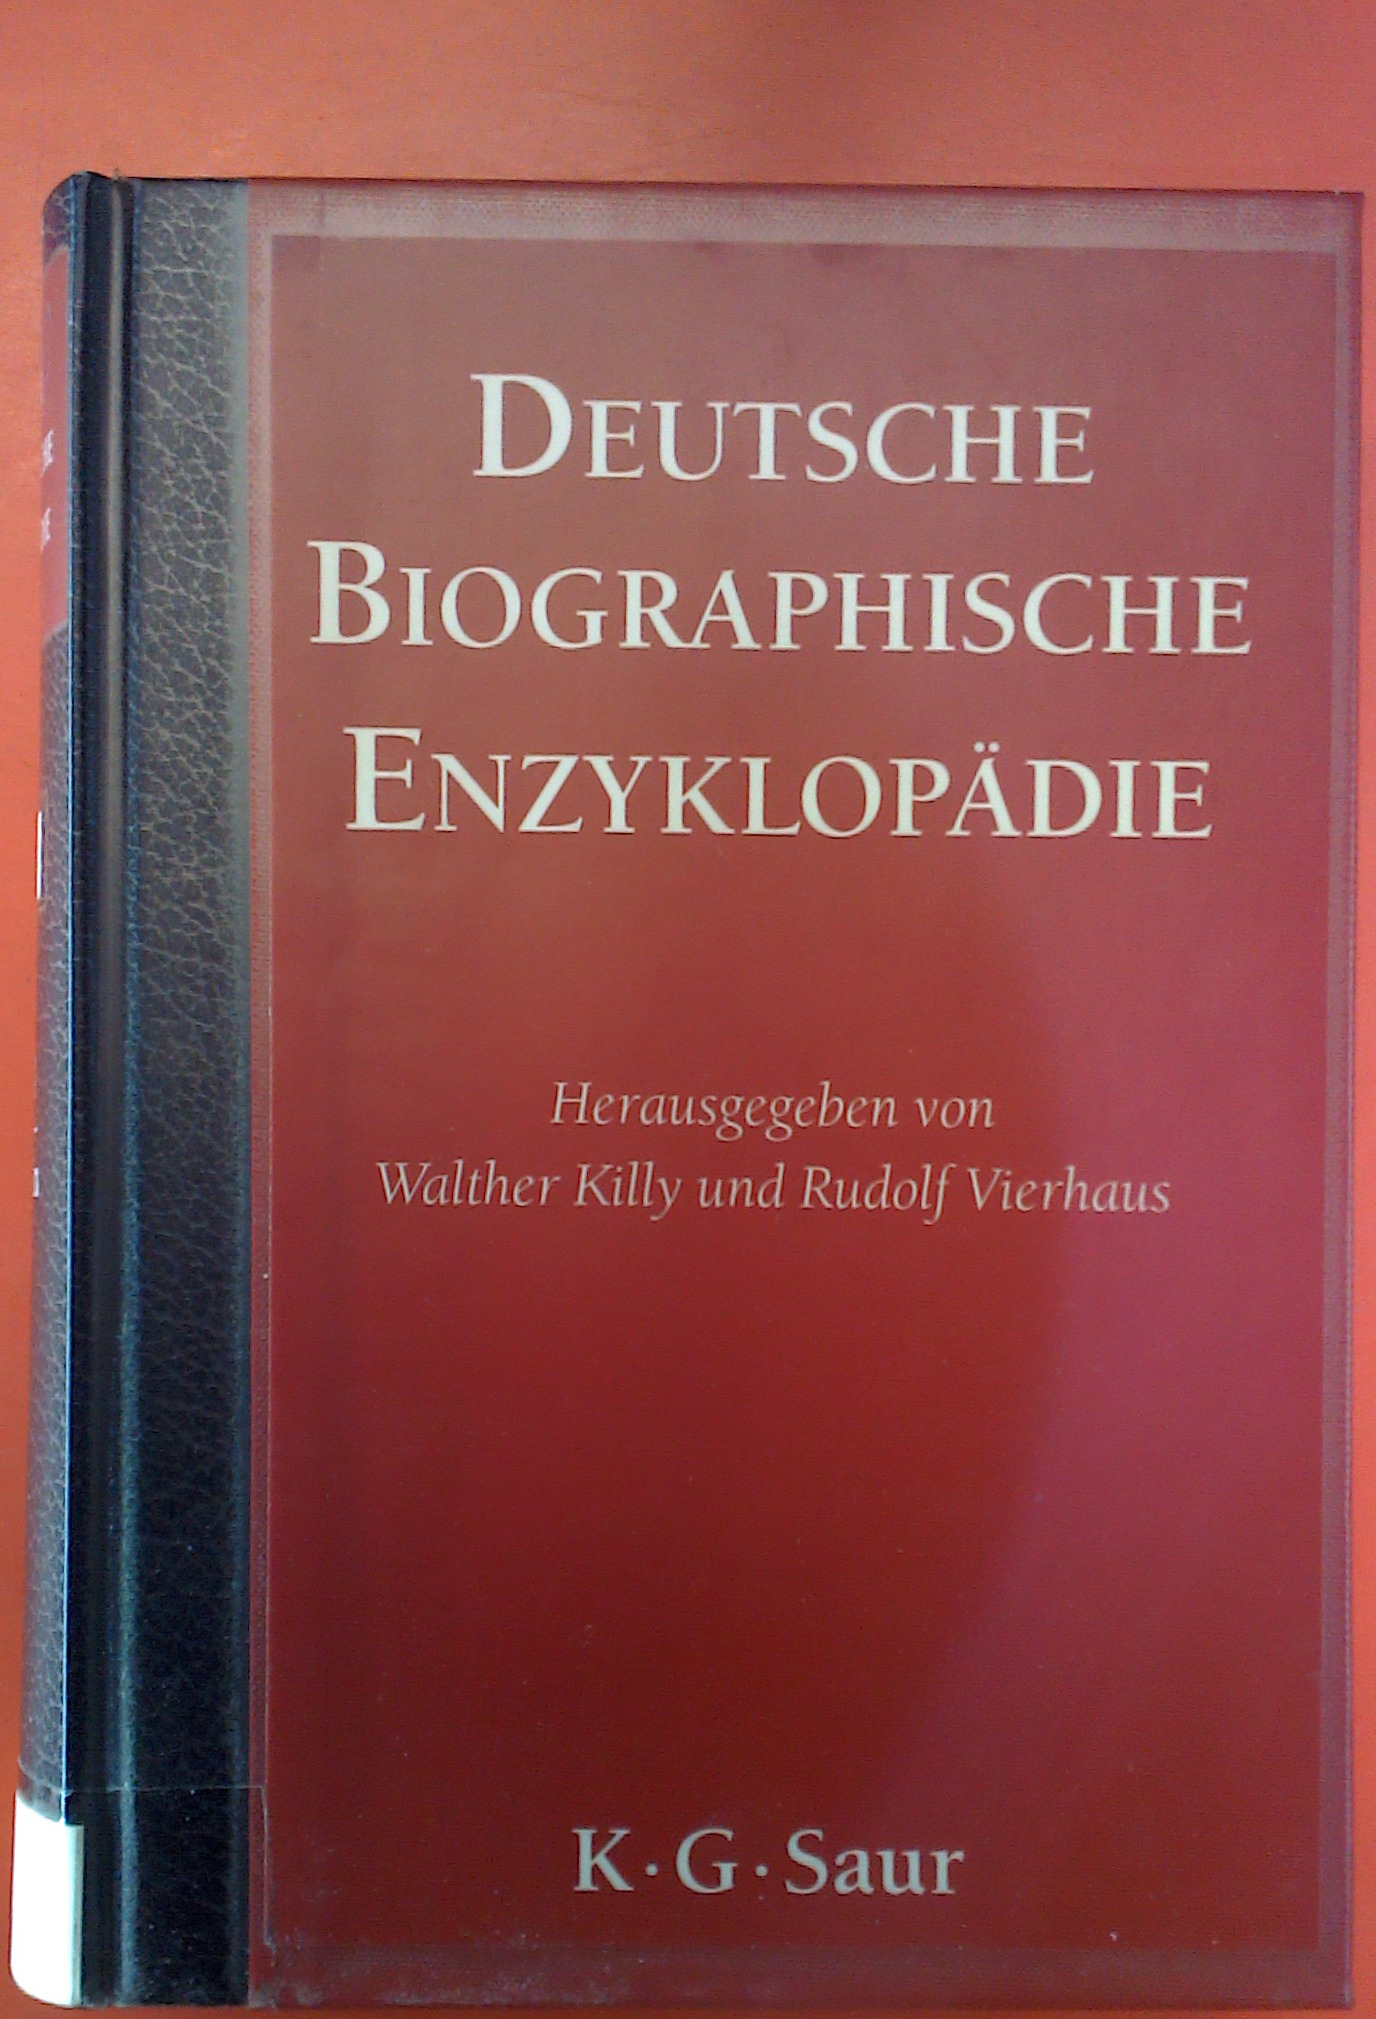 Deutsche Biographische Enzyklopädie Band 6: Kogel - Maxsein - Hrsg: Walther Killy / Rudolf Vierhaus